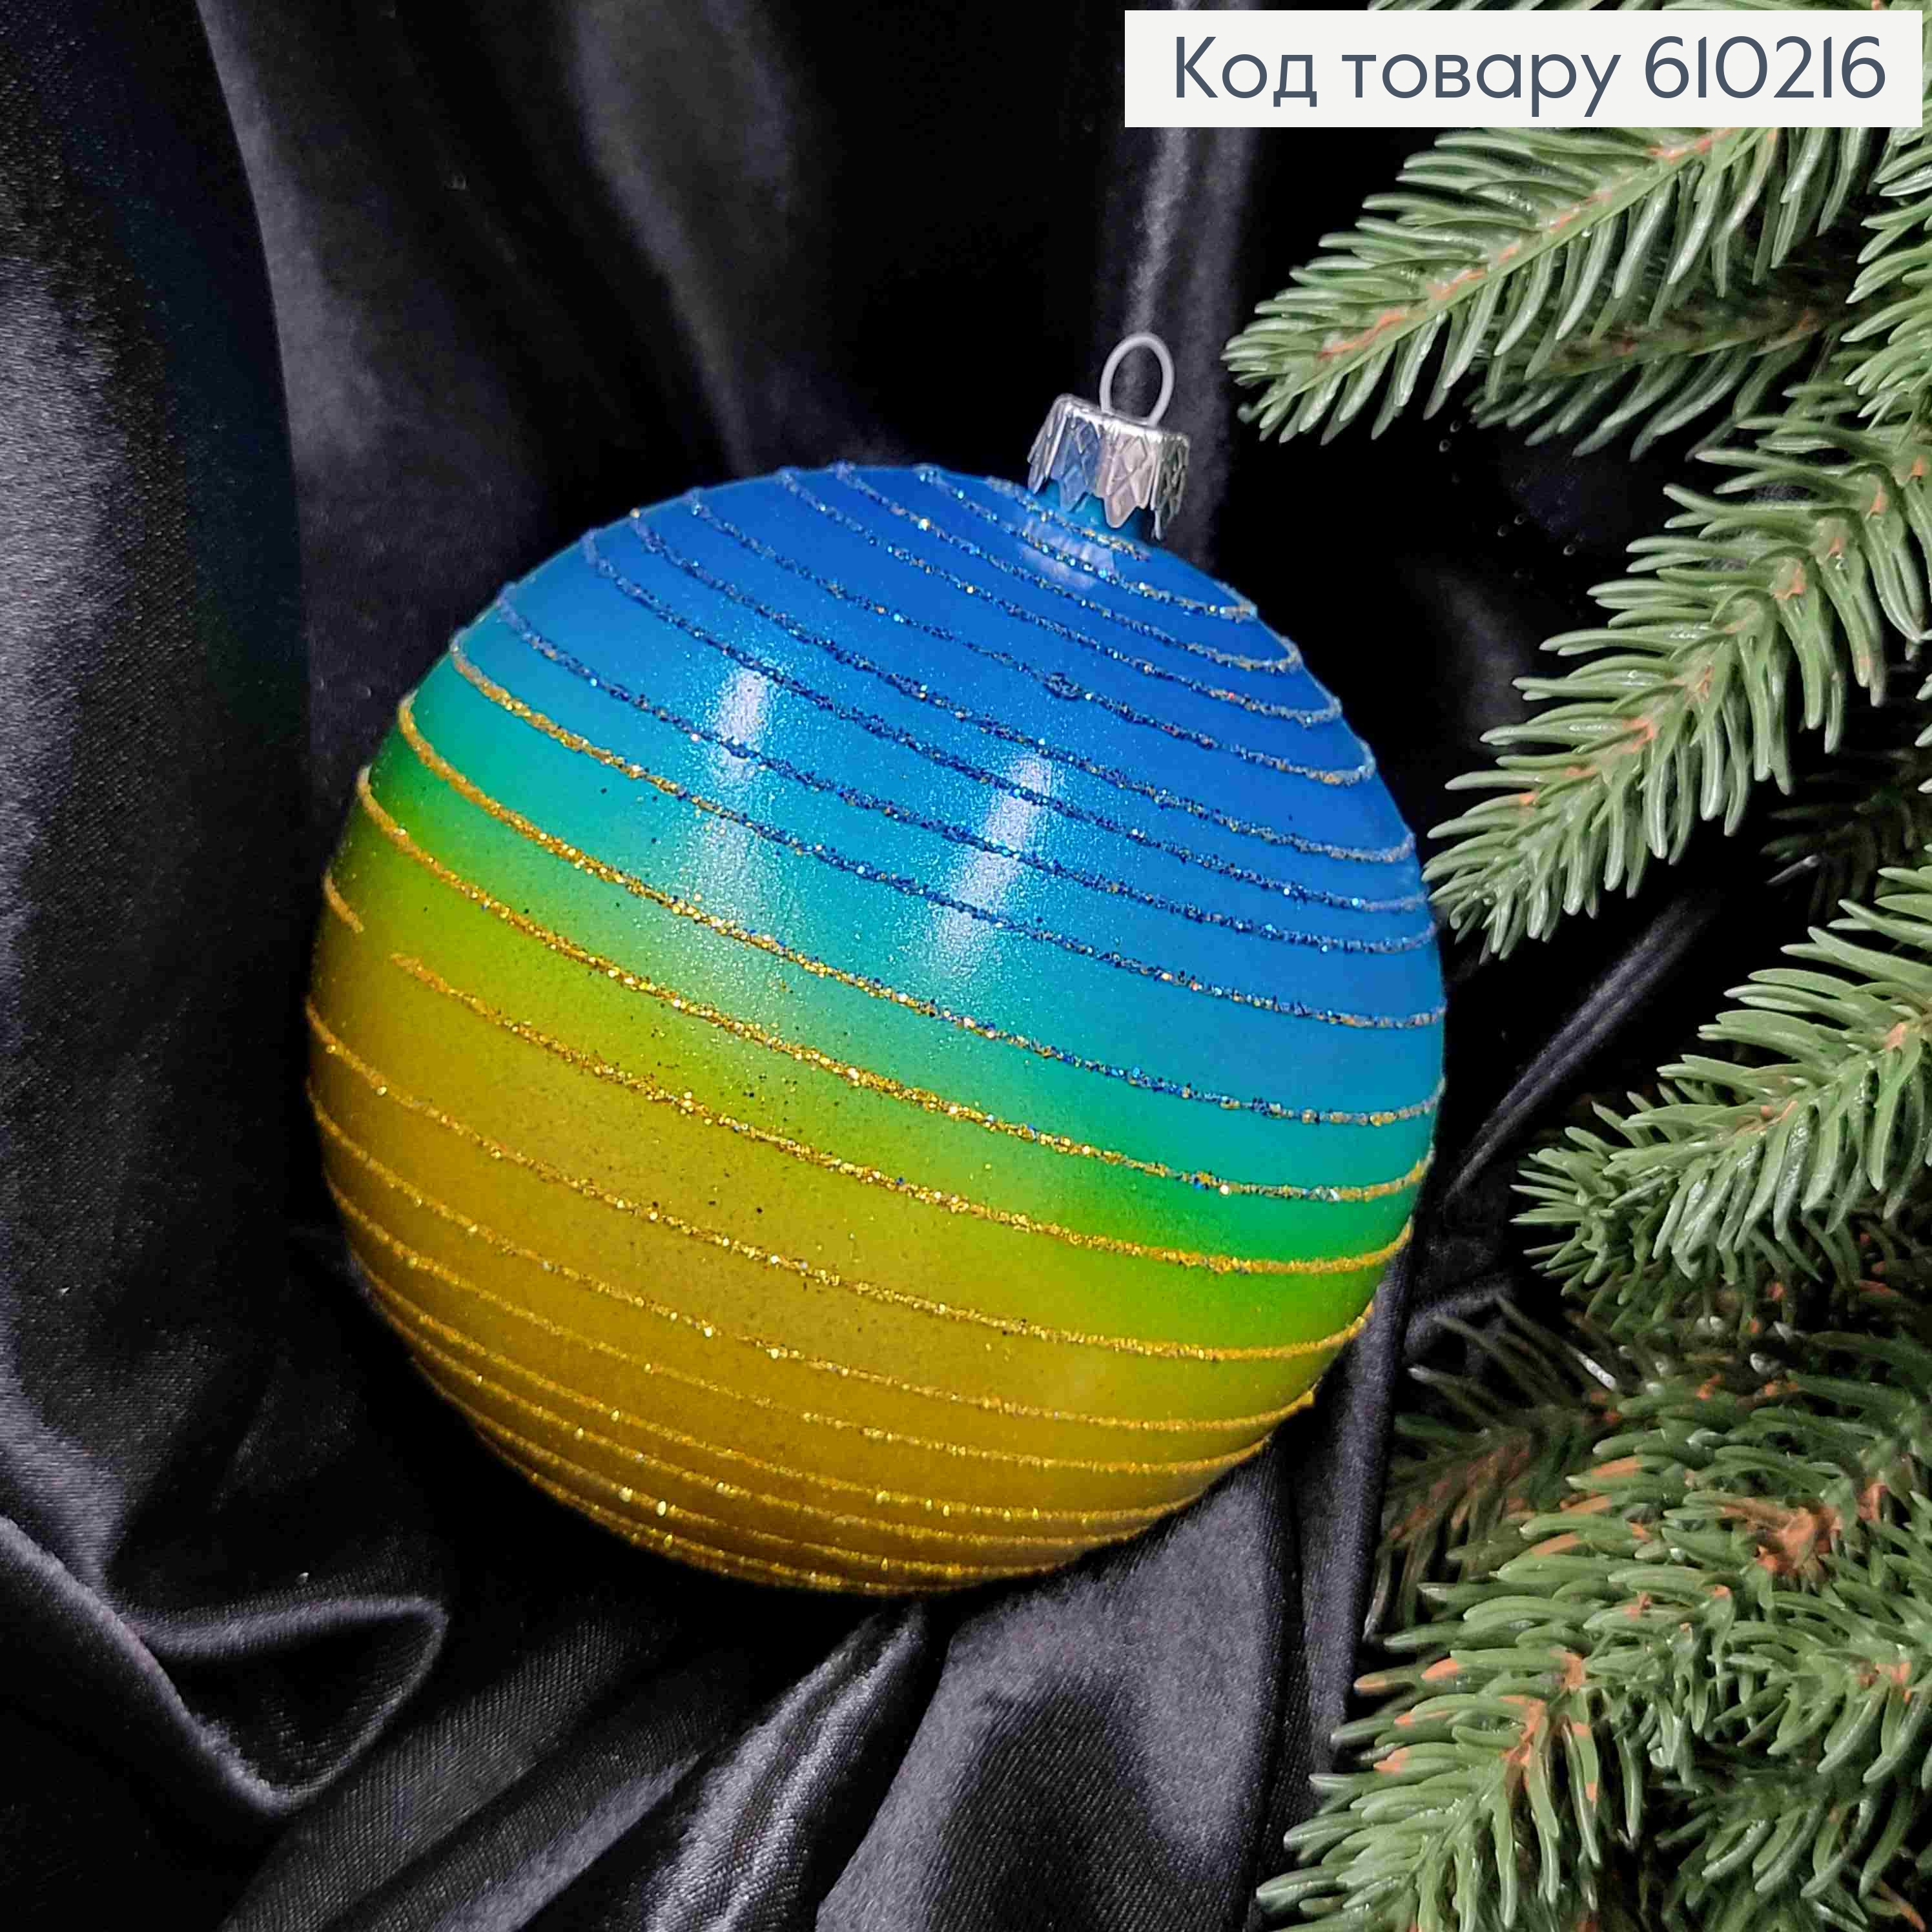 Іграшка куля 100мм "ДЗИГА" ОМБРЕ,  колір ЖОВТО-СИНІЙ, Україна 610216 фото 2